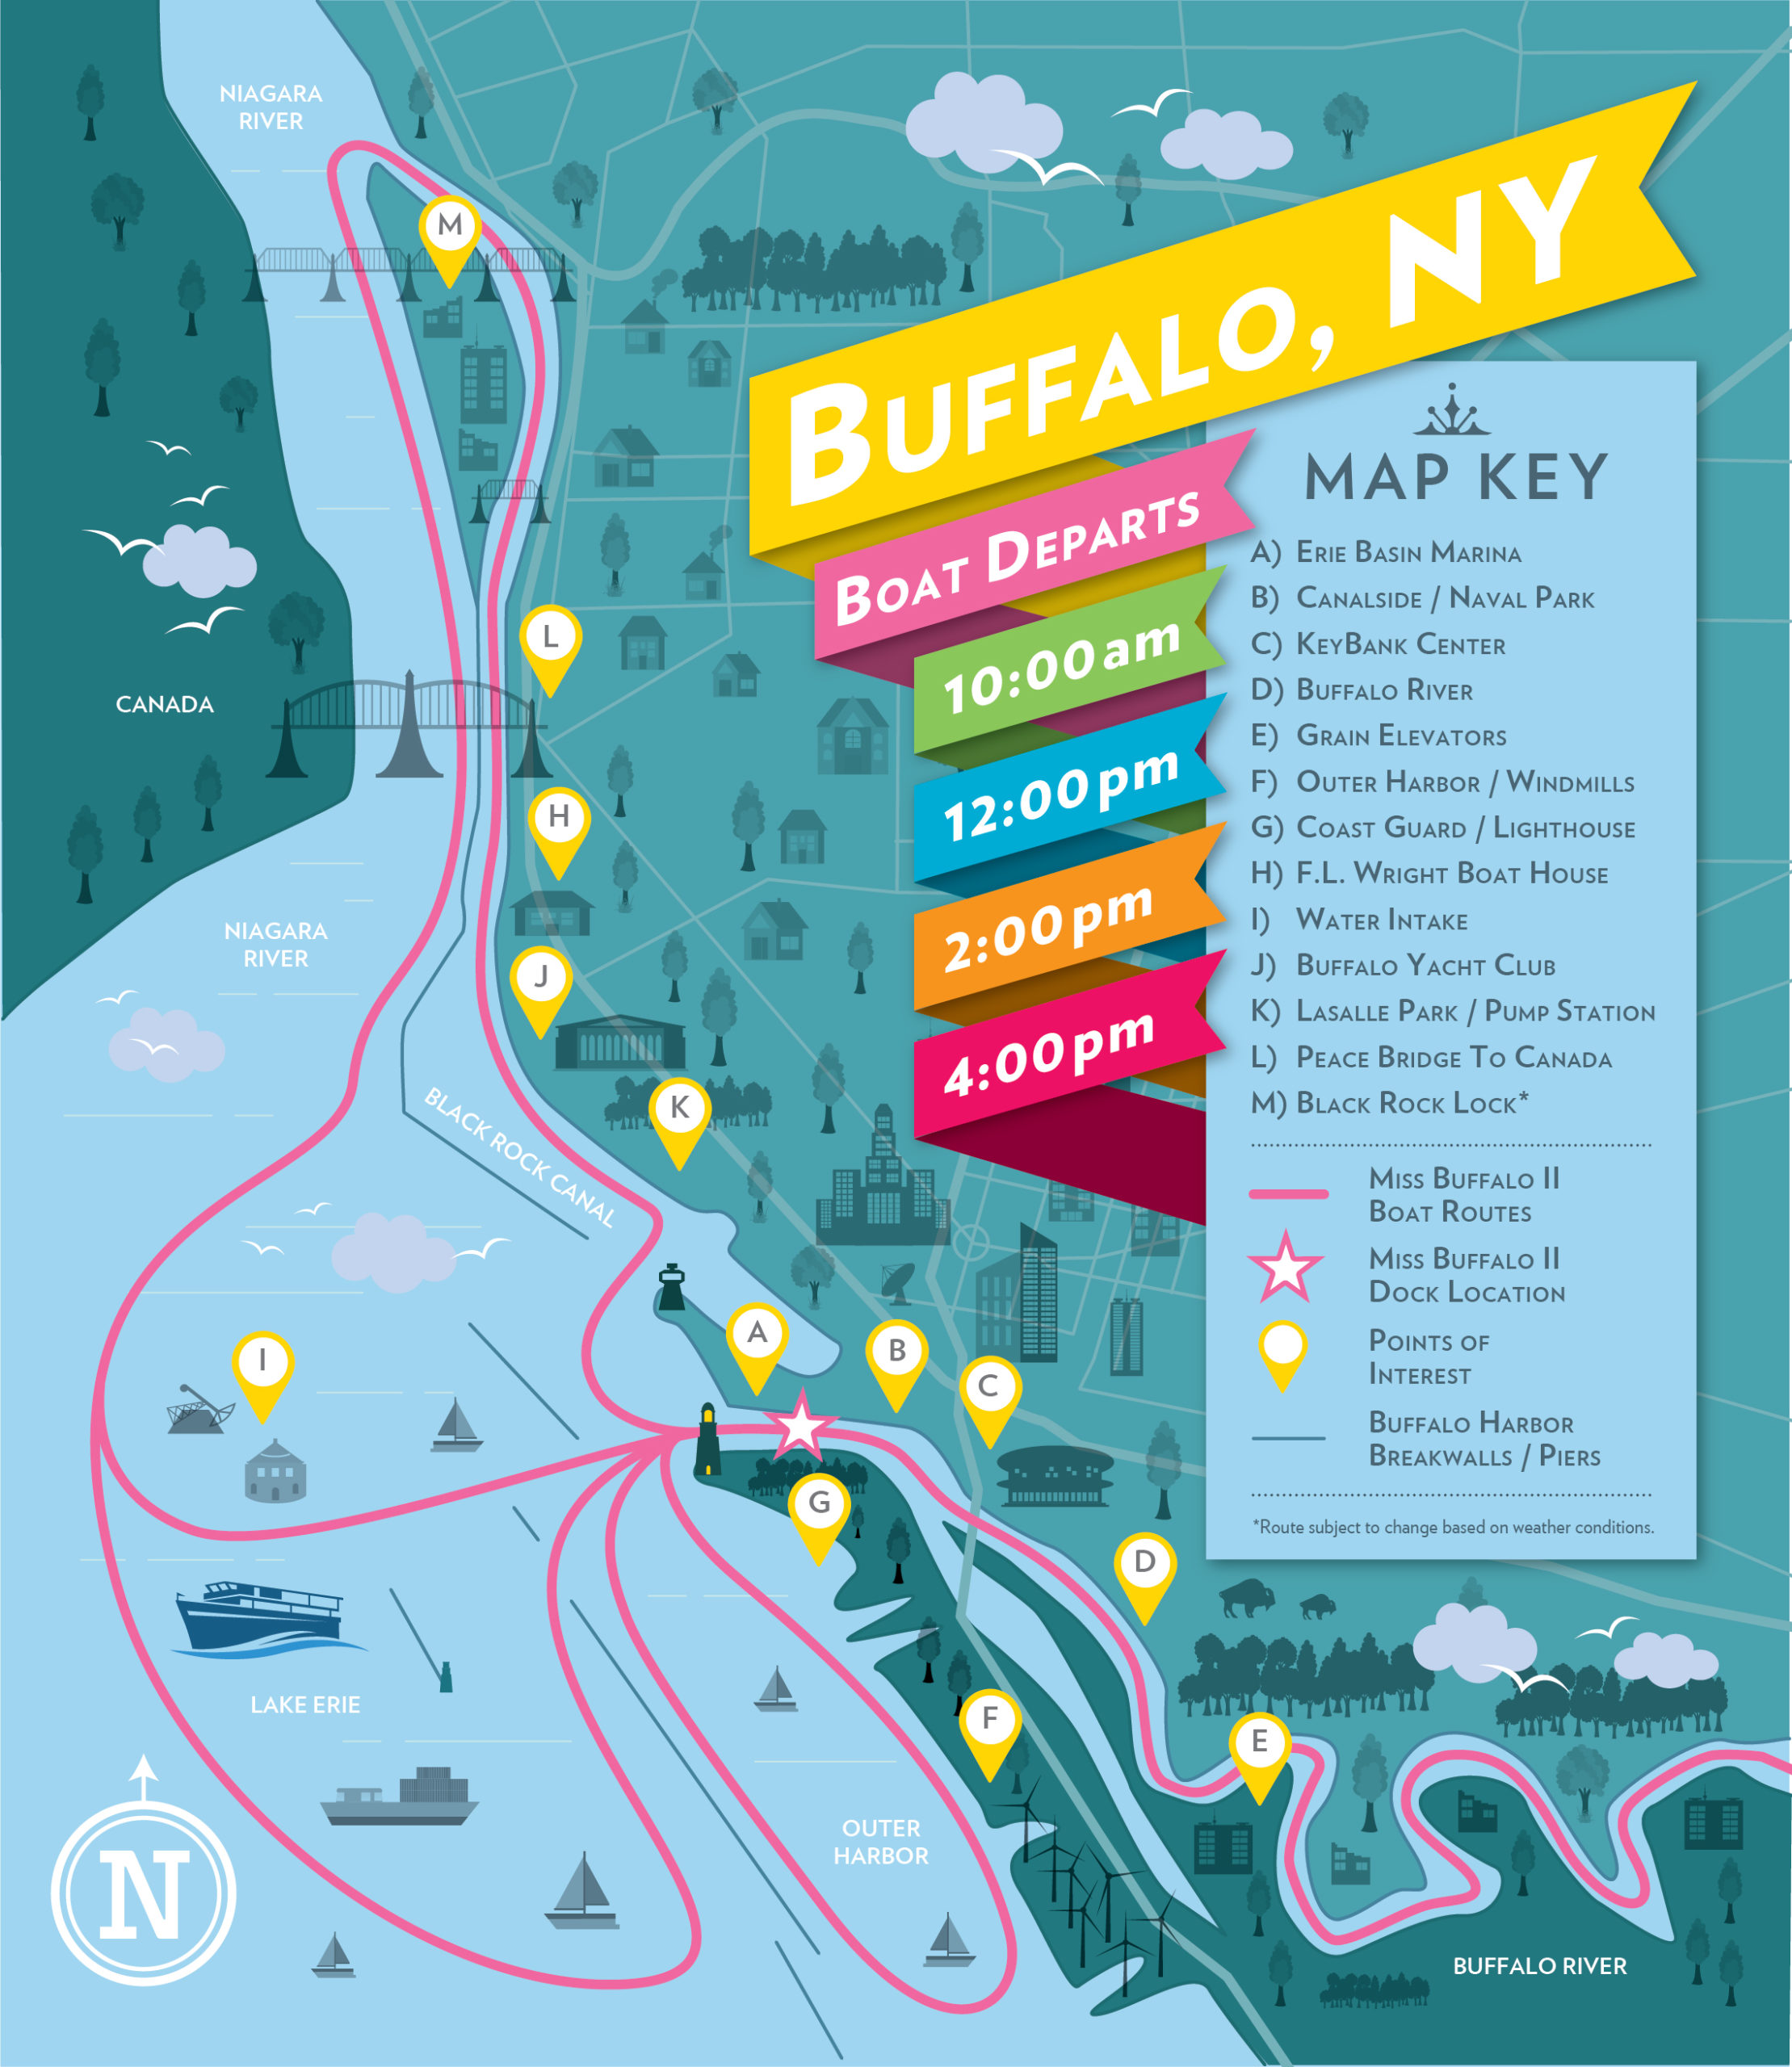 Buffalo Harbor Cruises Buffalo Boat Tours & Sightseeing Cruises NY